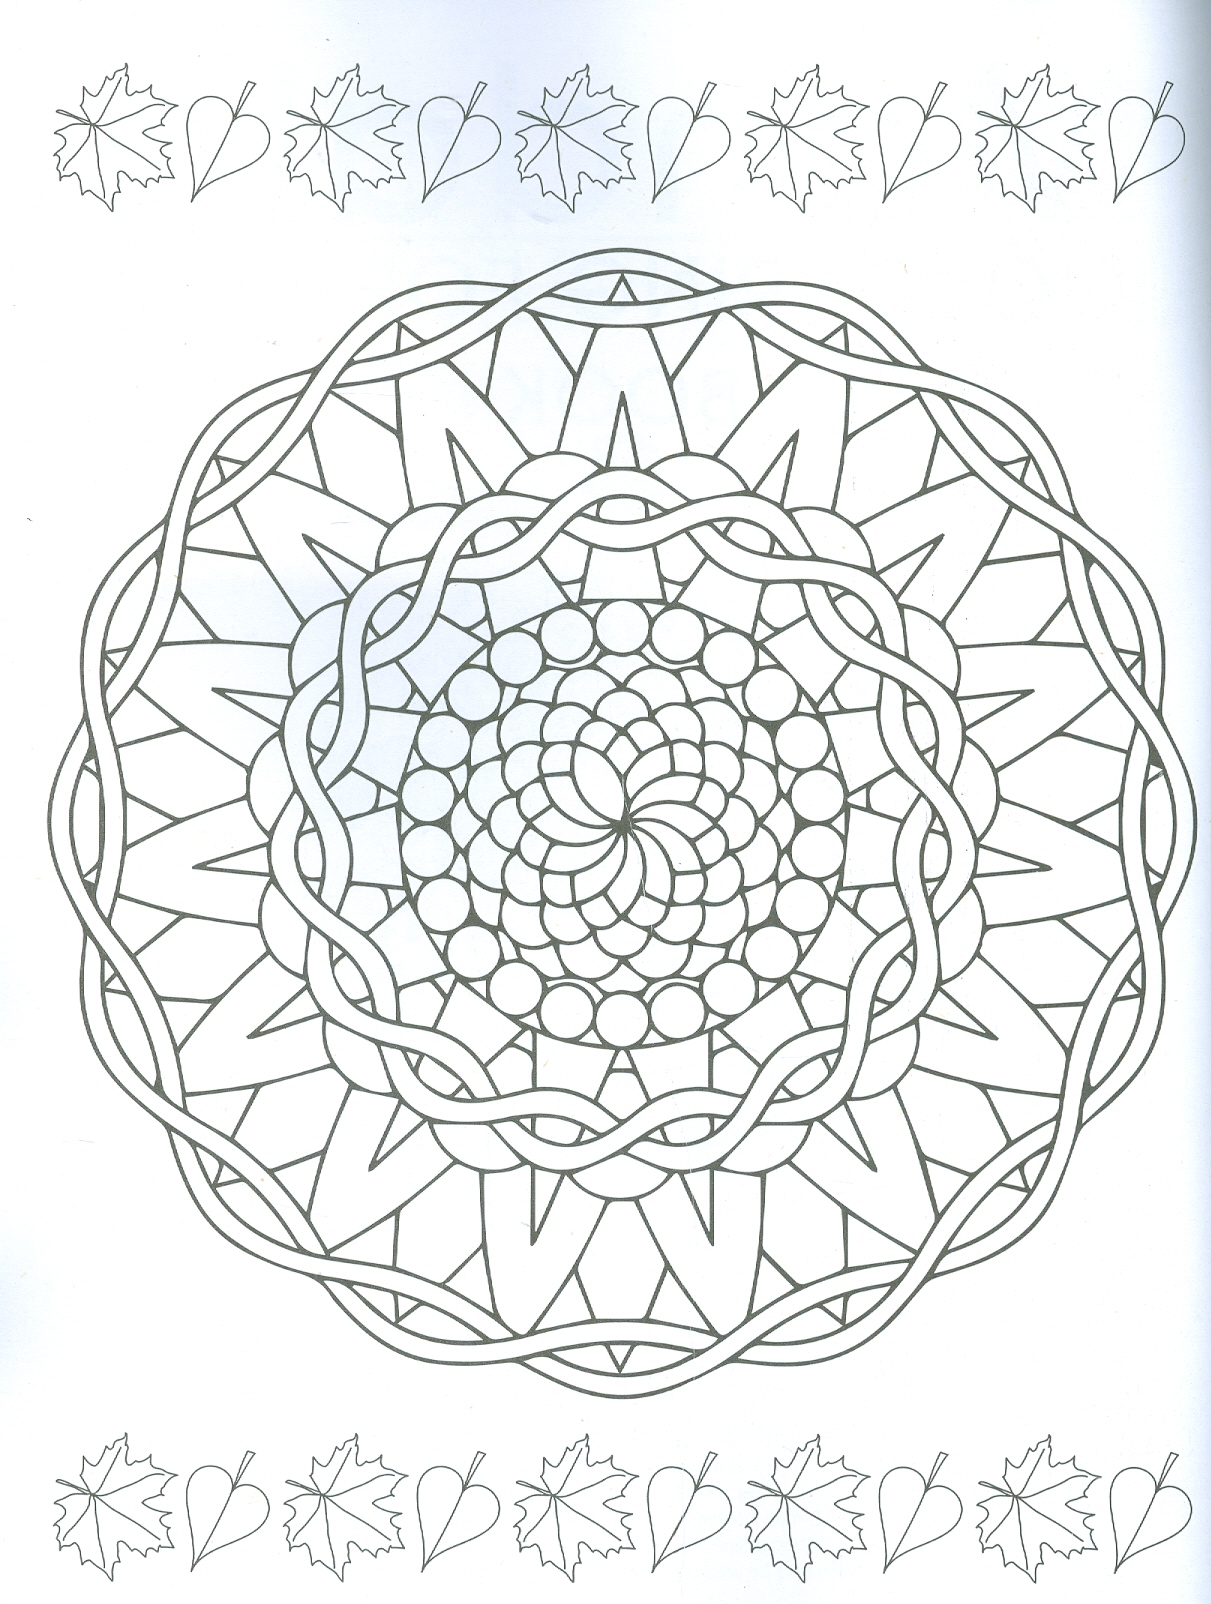 Mandala Colouring For Kids - Book 1 (Sách tô màu họa tiết cho trẻ em - Tập 1)